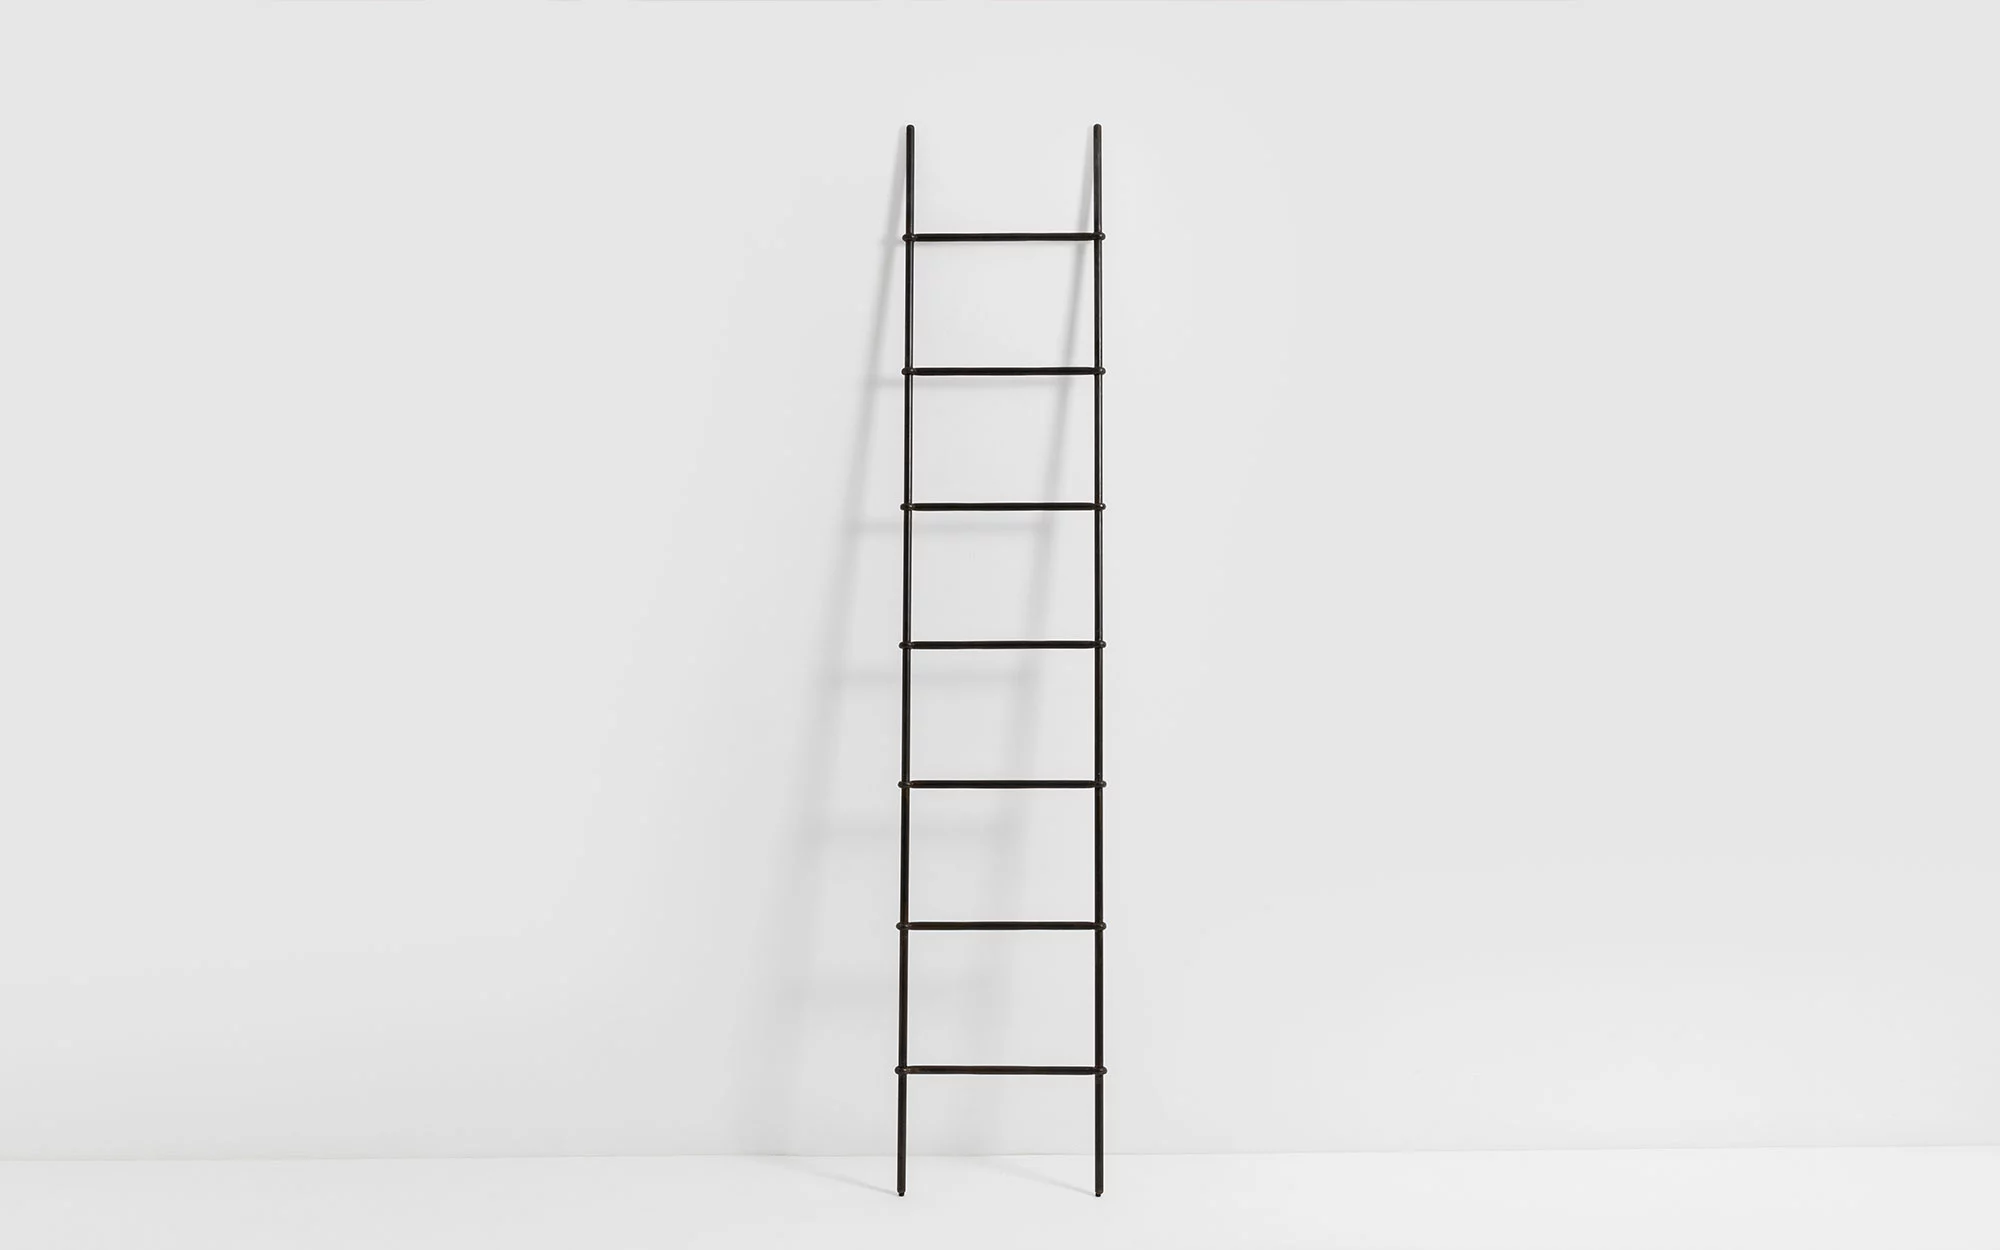 Ciel ladder - Ronan & Erwan Bouroullec - Shelf - Galerie kreo